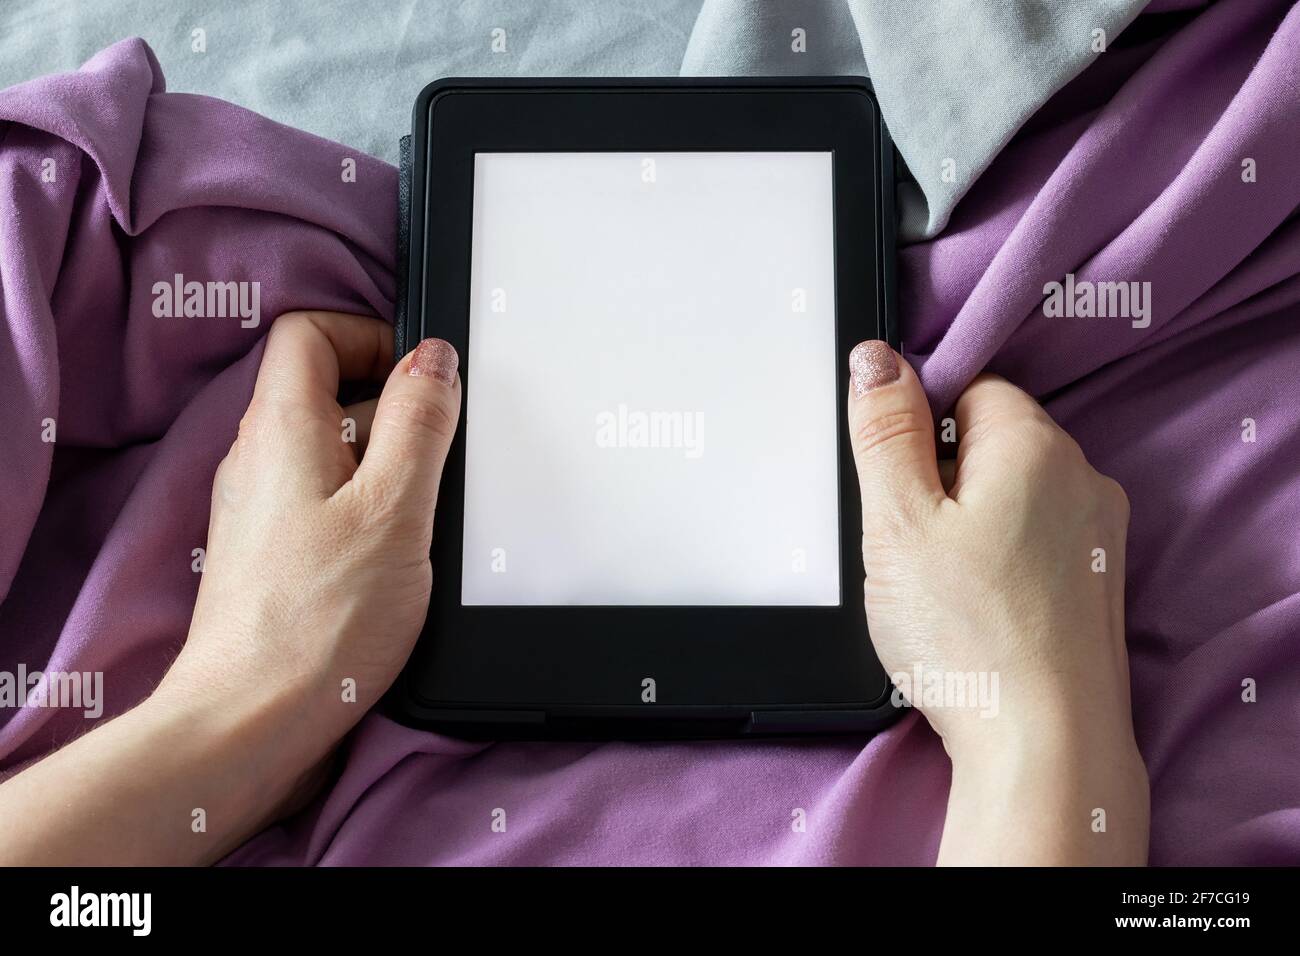 Ein modernes elektronisches E-Reader mit einem leeren Bildschirm in weiblichen Händen auf einem grauen und violetten Bett. Mockup Tablet auf Microfaser-Bettwäsche Nahaufnahme Stockfoto